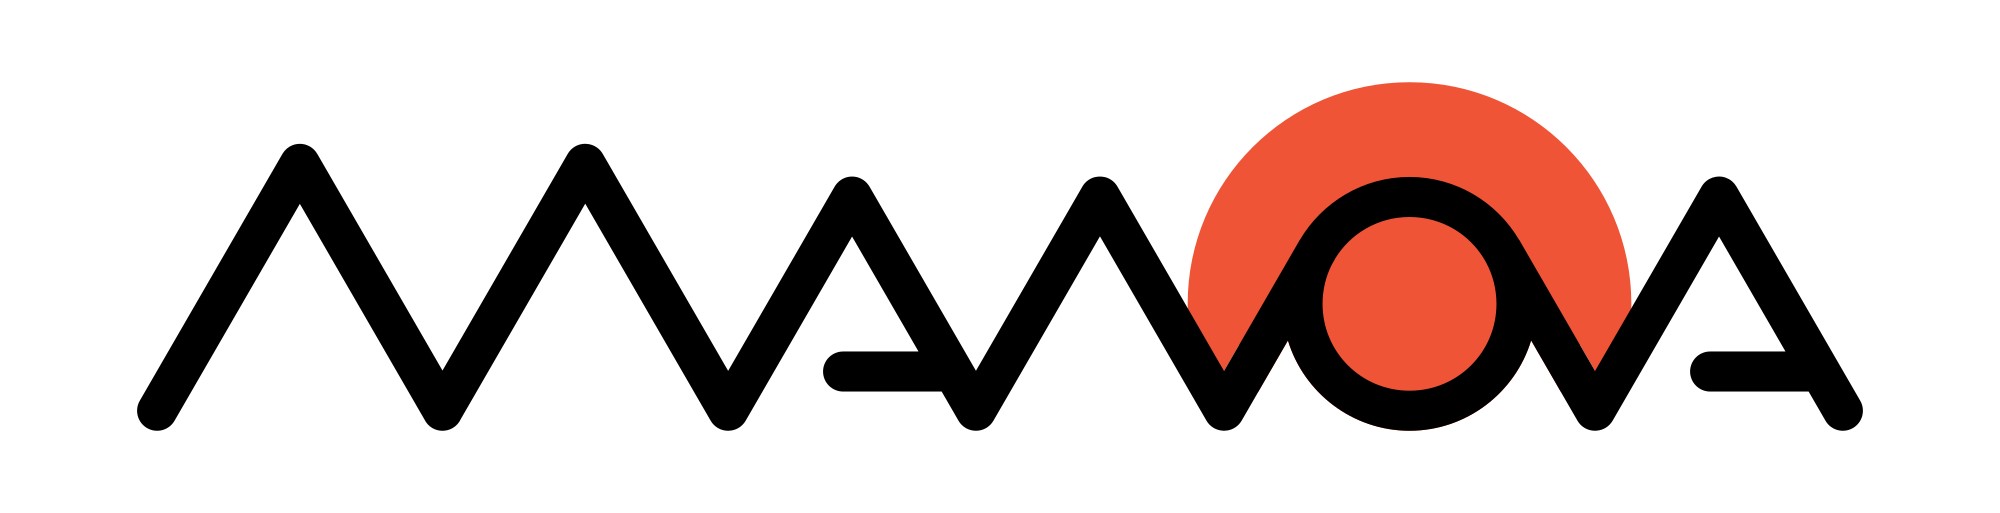 manova logo full